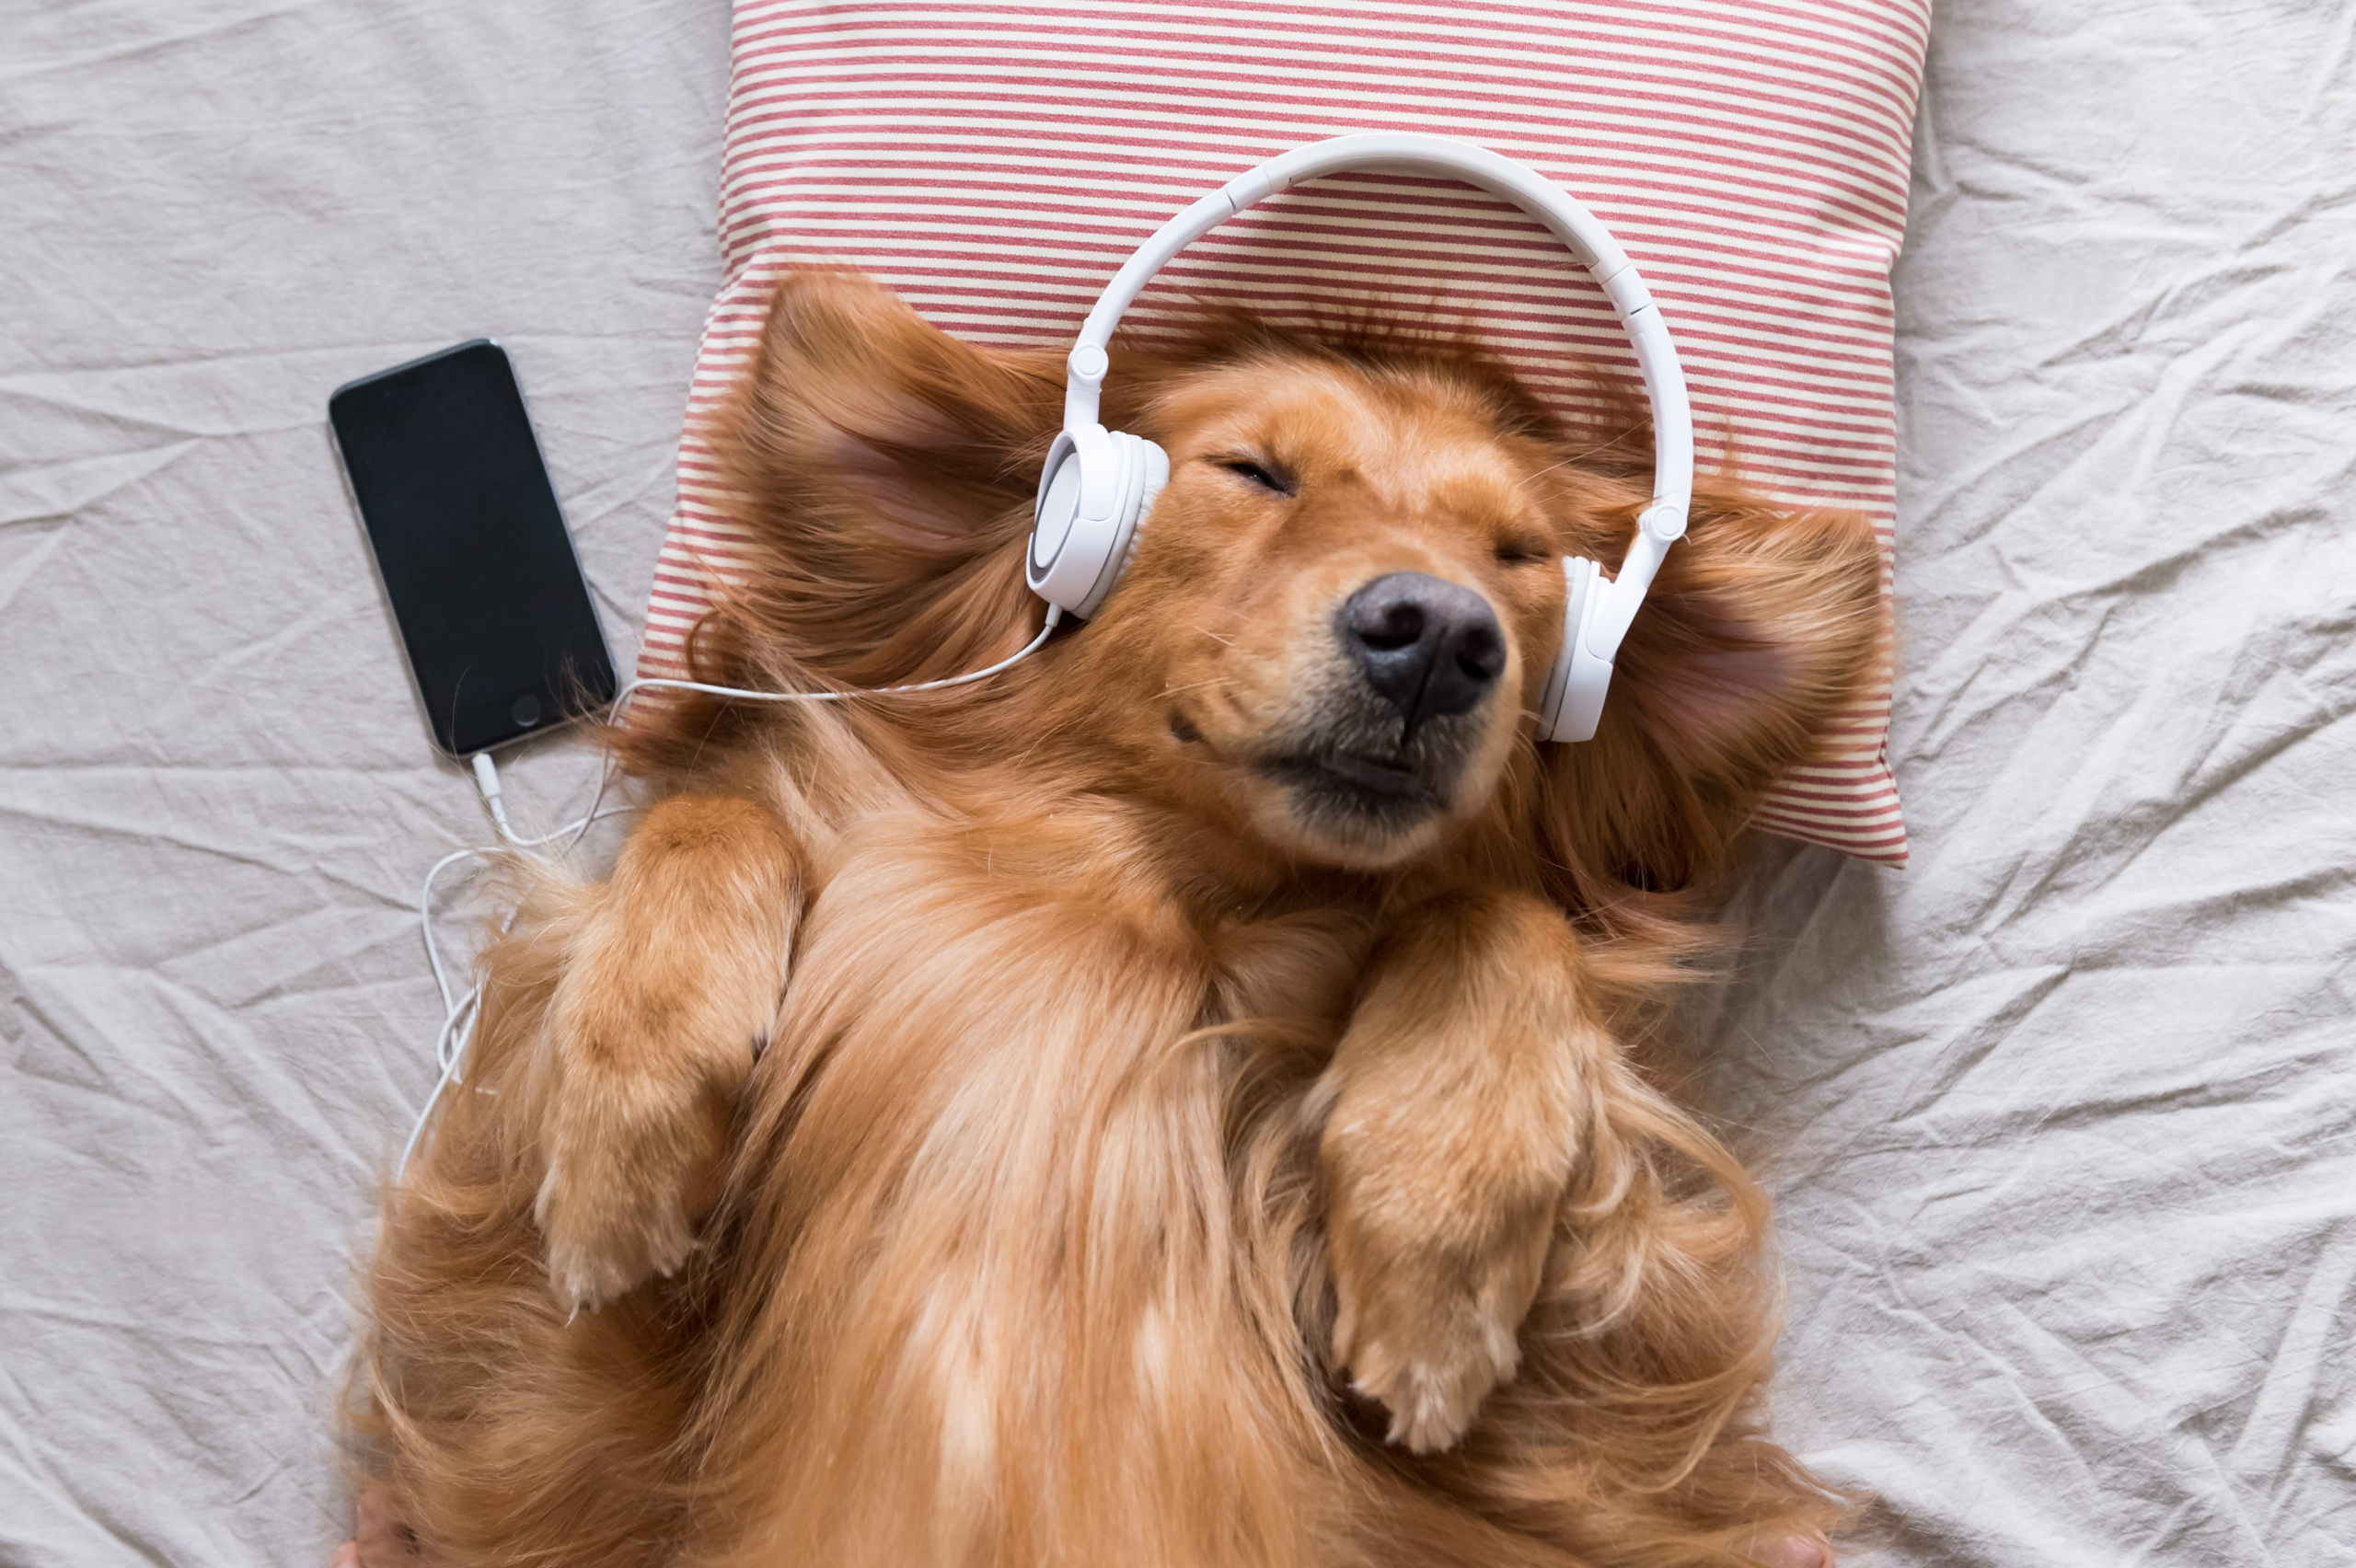 A golden retriever wearing headphones listening to an audiobook.